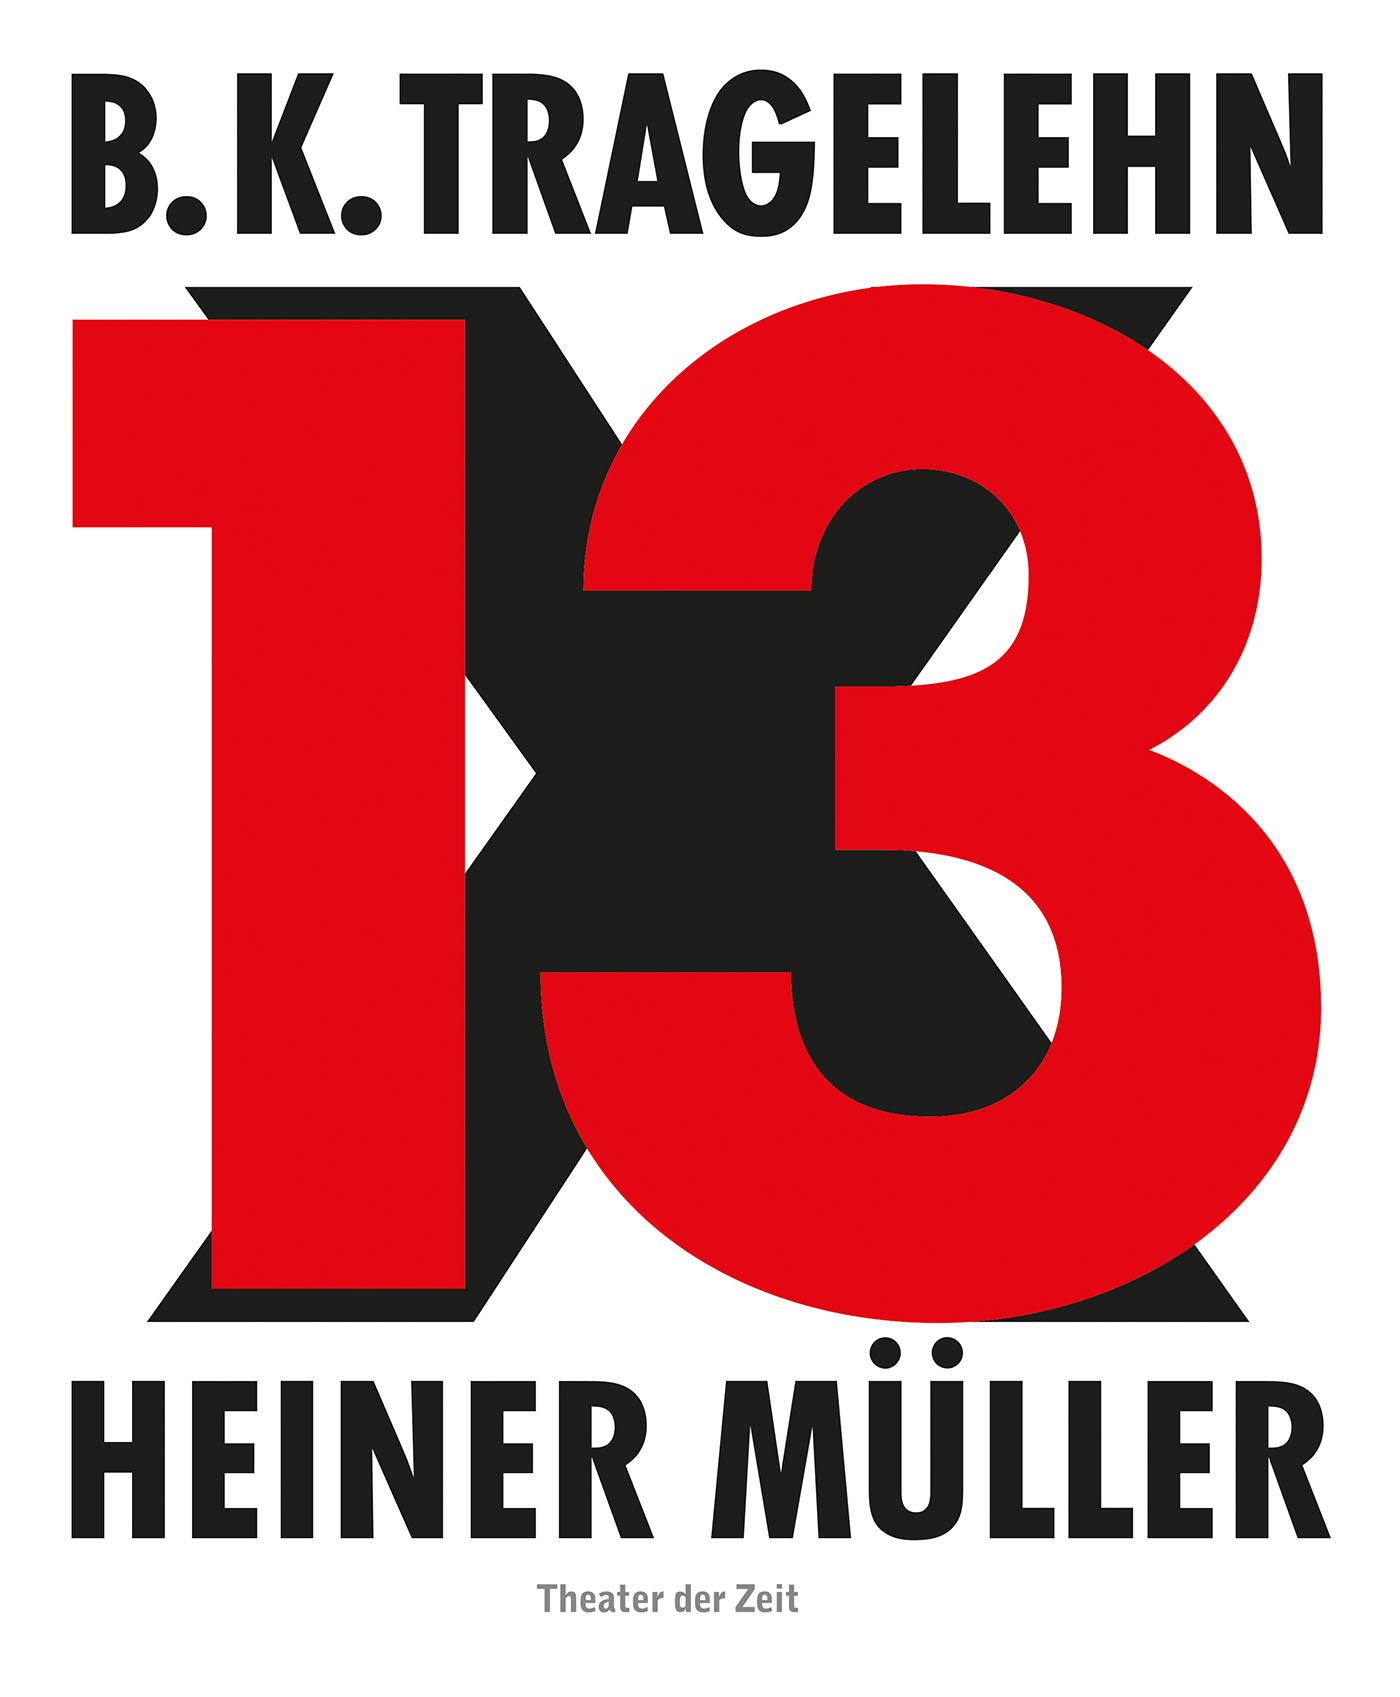 "B. K. Tragelehn - 13 x Heiner Müller"